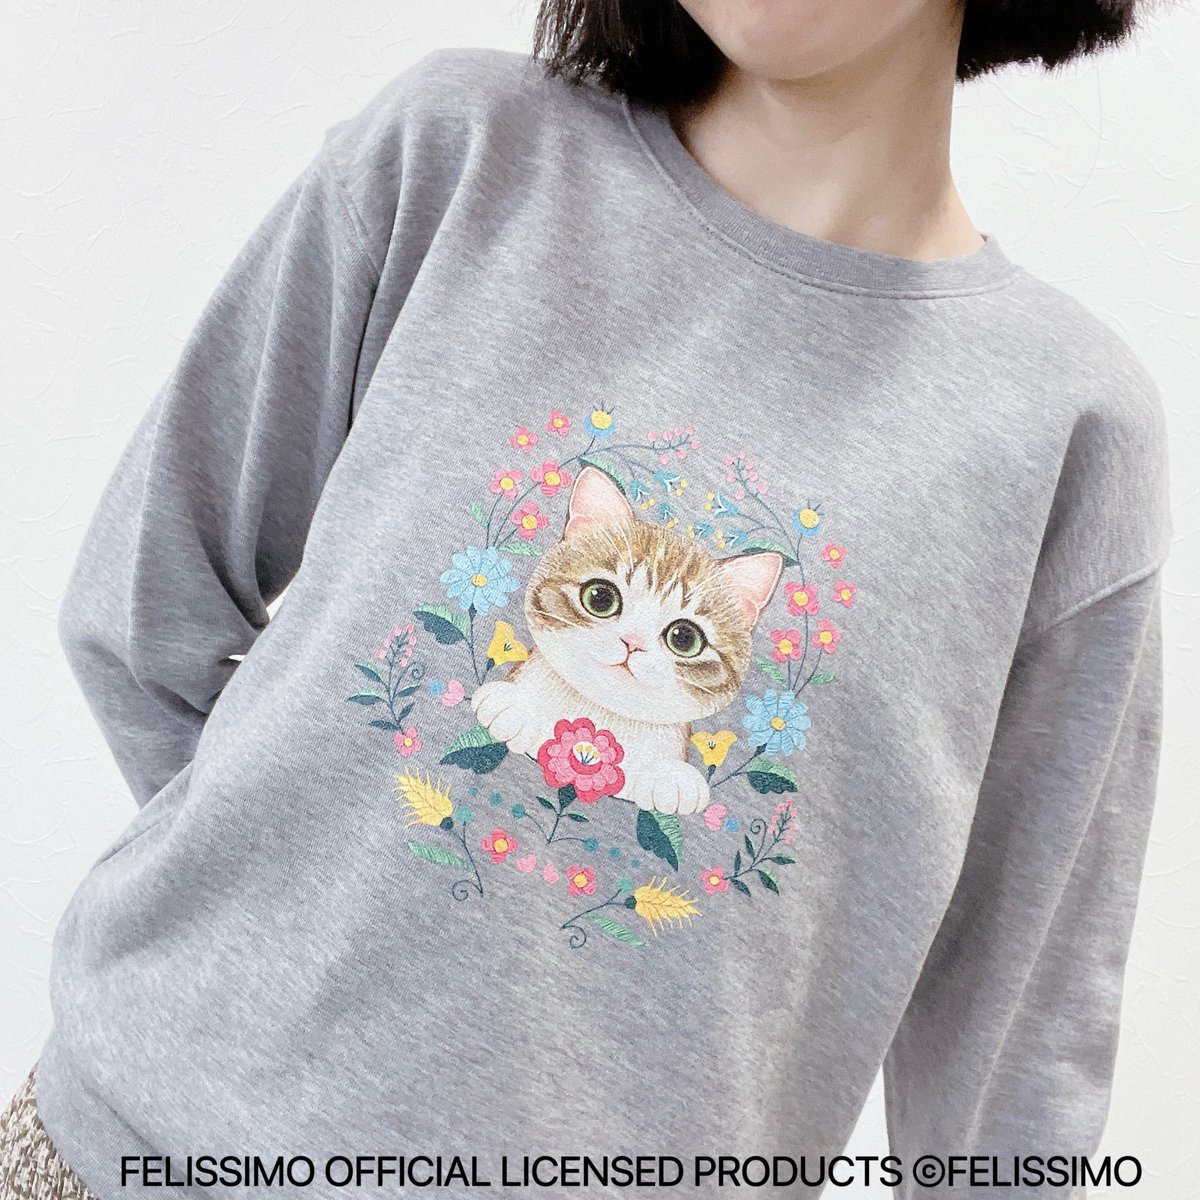 「\猫部ライセンスグッズ情報/ 霜田有沙さんと995さんのイラストが、かわいいアパ」|フェリシモ「猫部」のイラスト